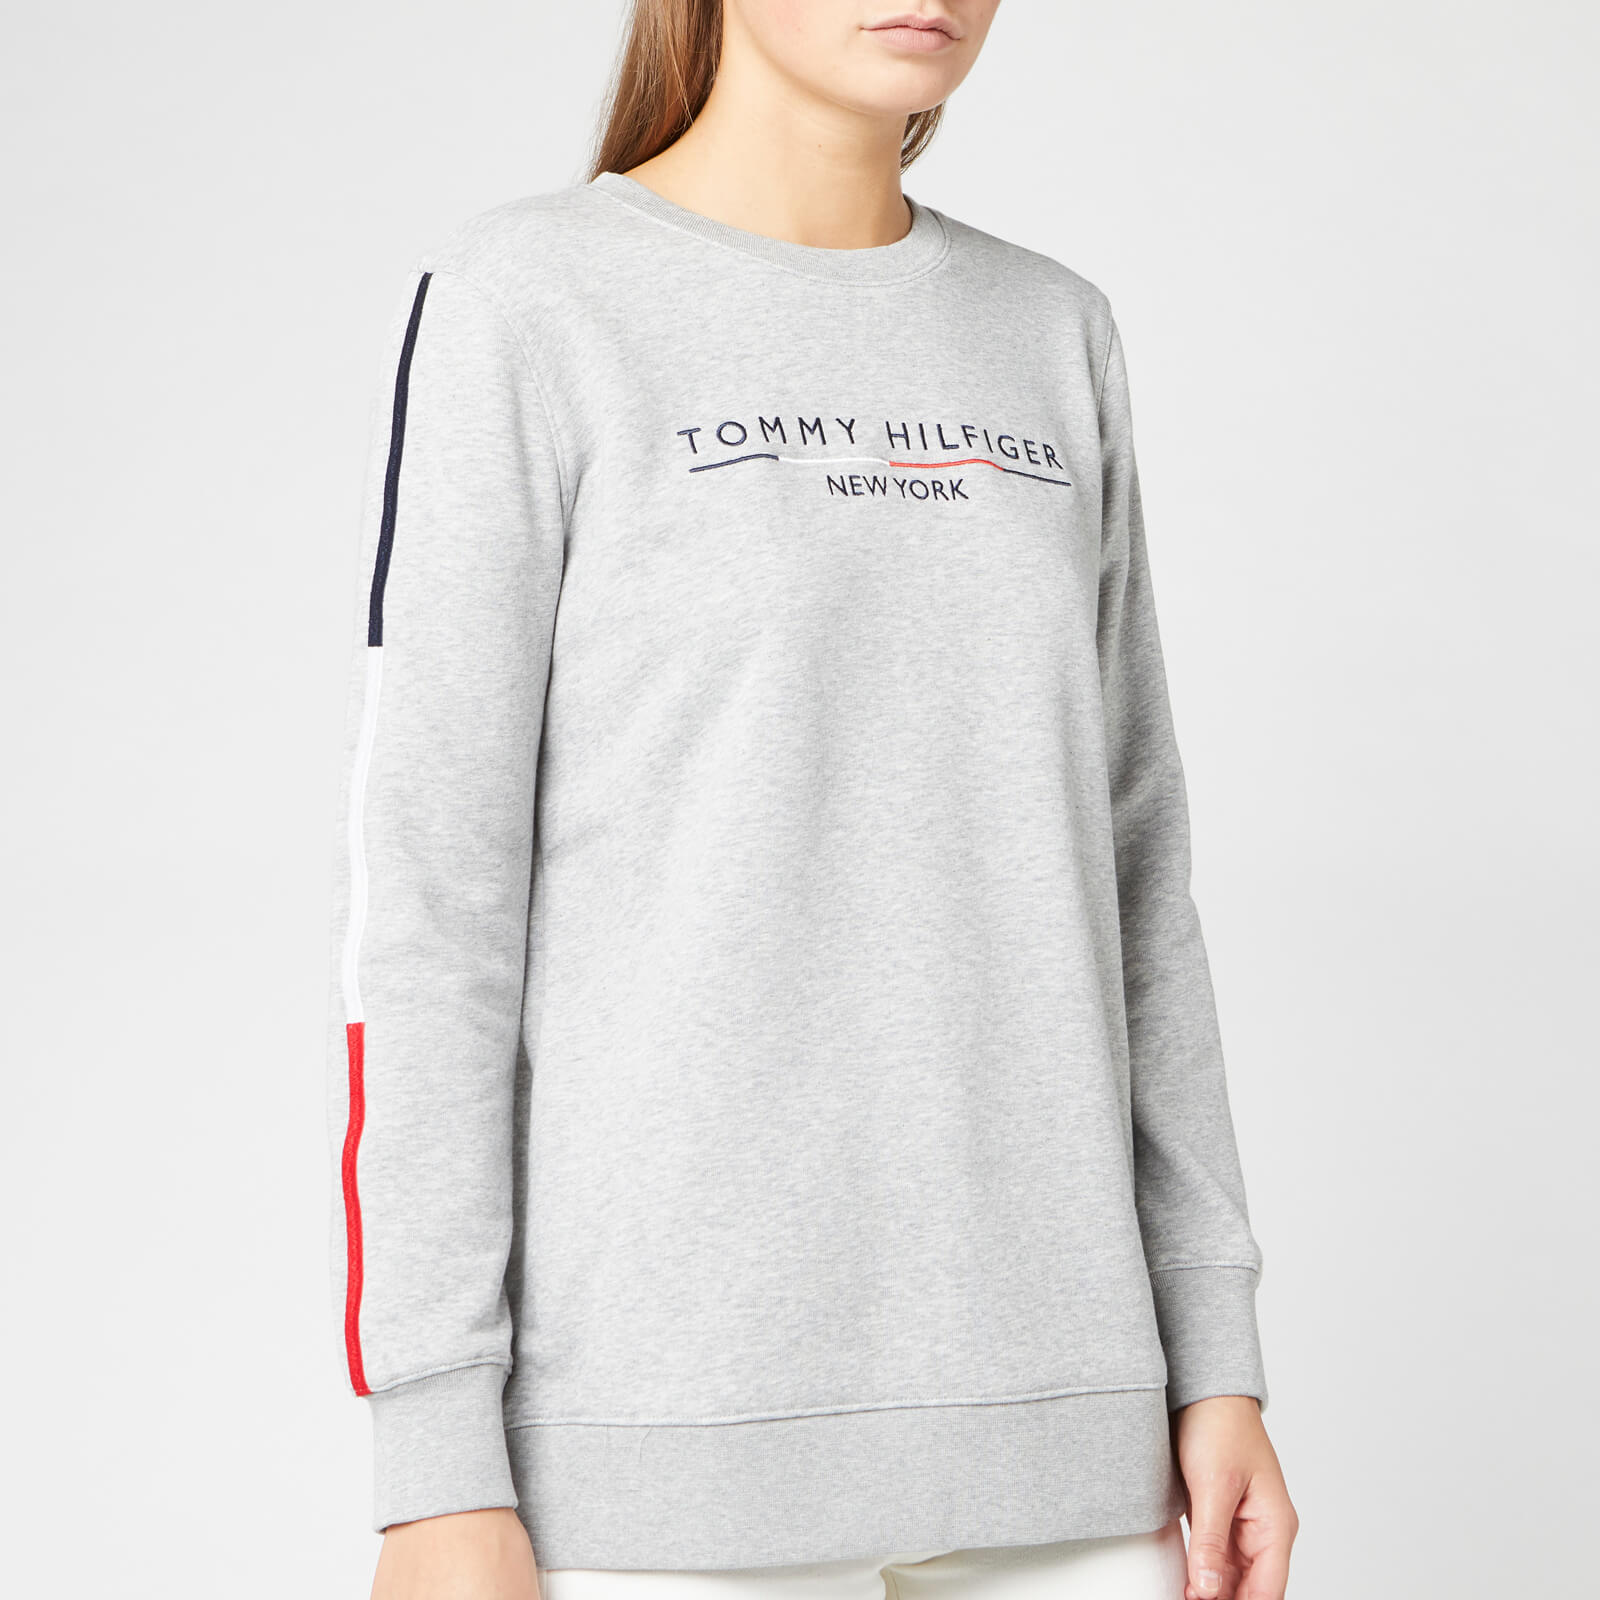 womens grey tommy hilfiger sweatshirt